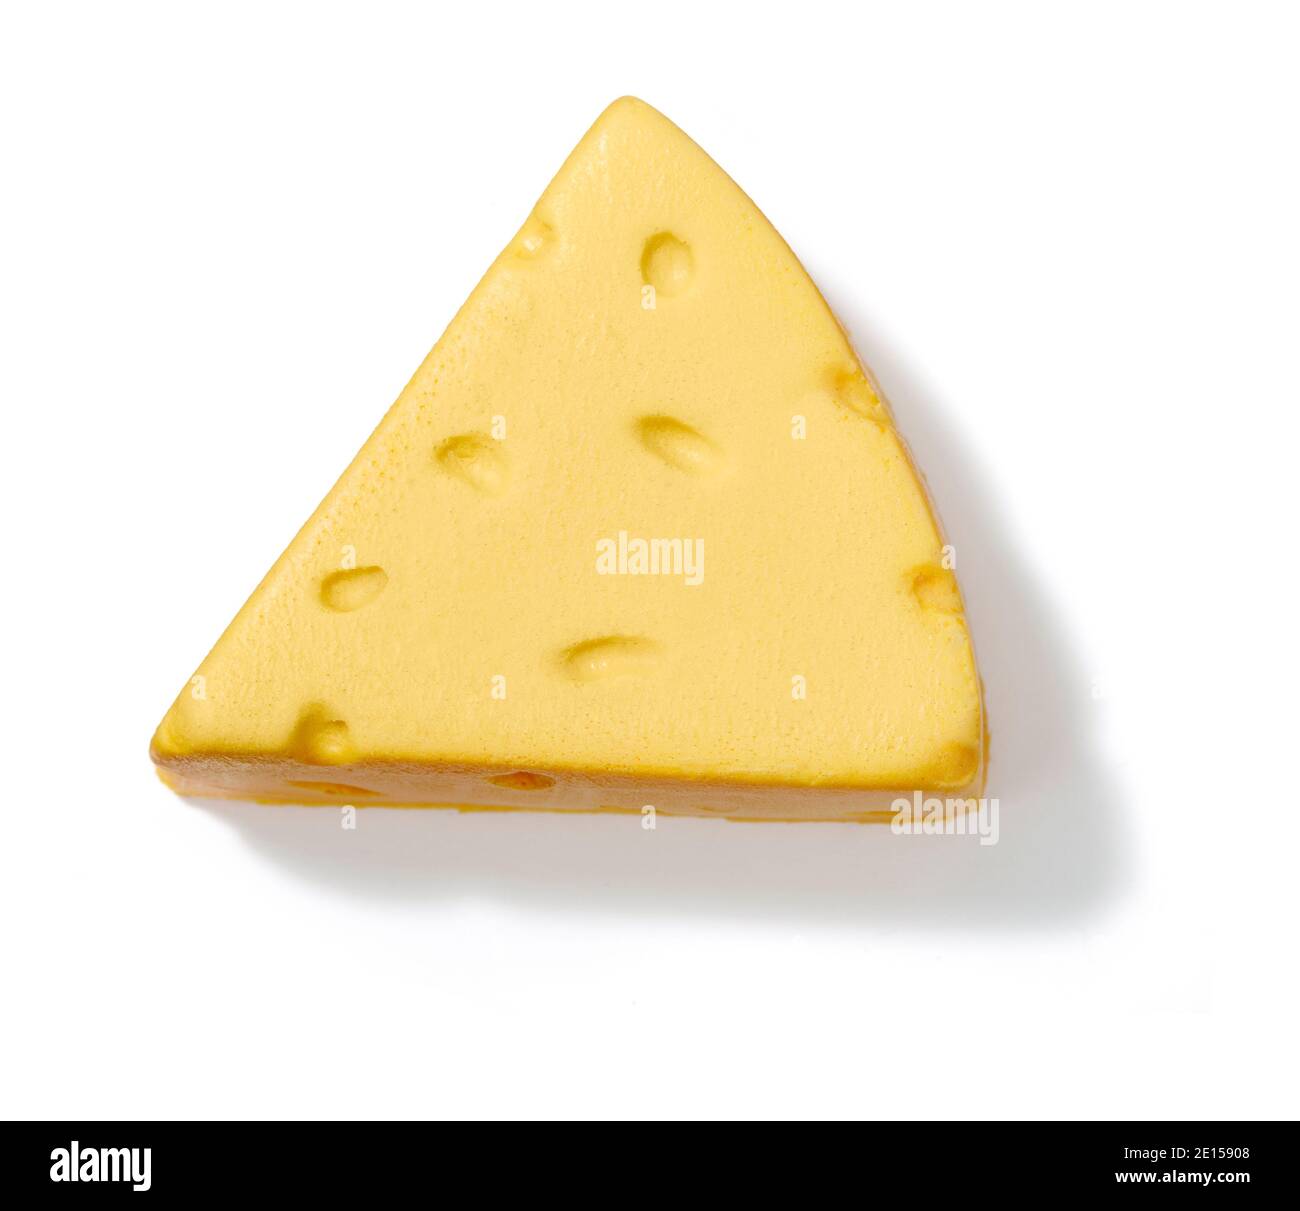 Gelber Käsekeil auf weißem Hintergrund fotografiert Stockfoto